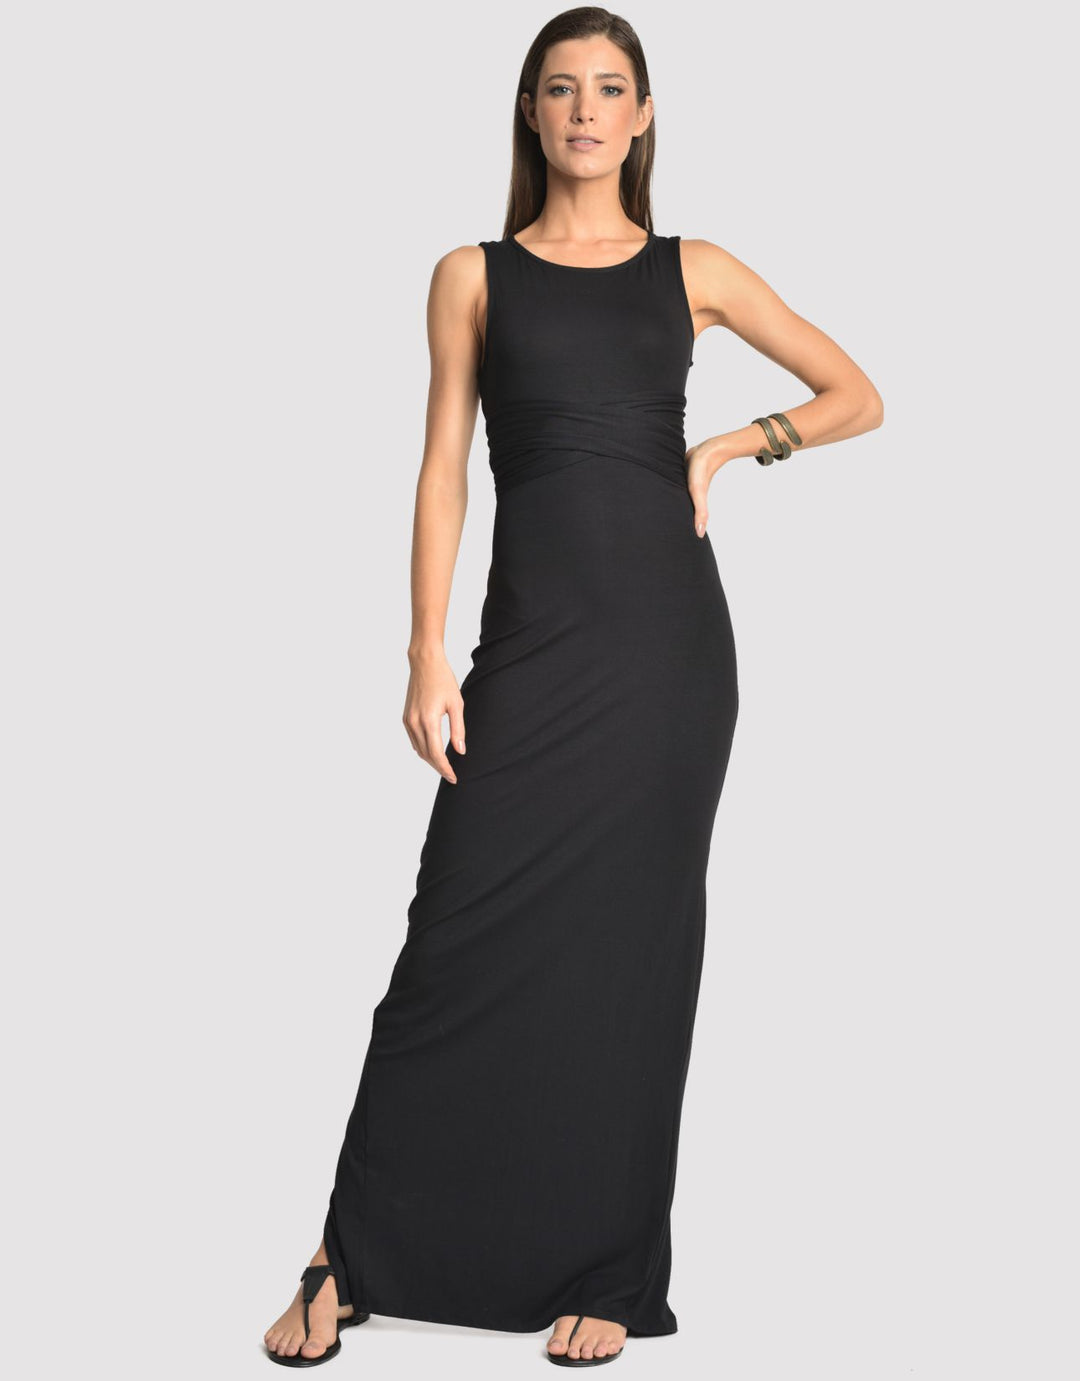 Lenny Niemeyer Black Sleeveless Maxi Dress 